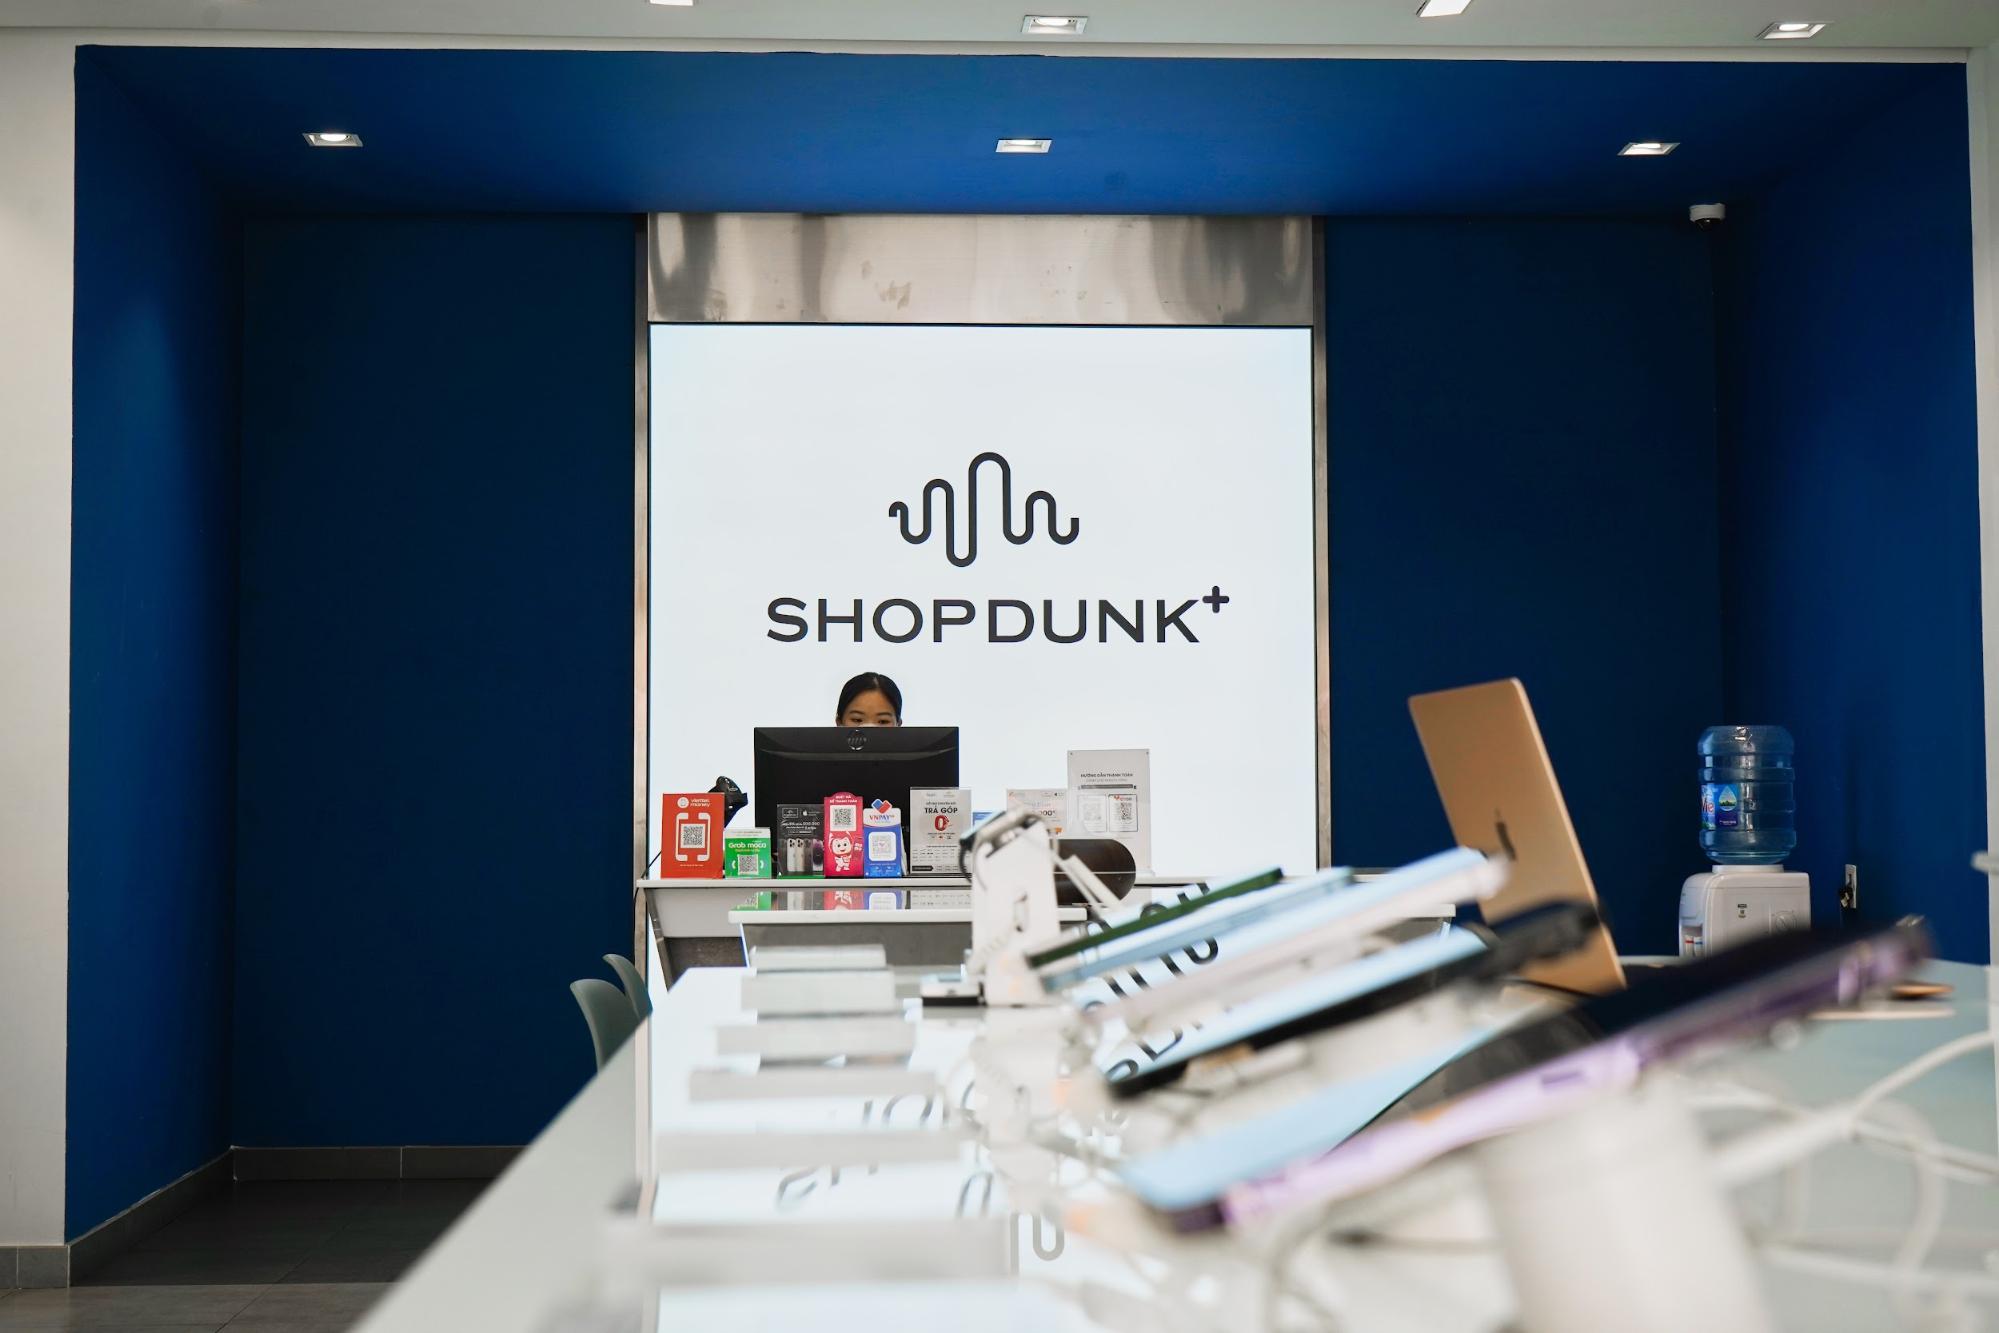 ShopDunk mang tới 2 chương trình trả góp siêu ưu đãi giúp bạn dễ dàng sở hữu sản phẩm mong muốn trong thời gian ngắn nhất